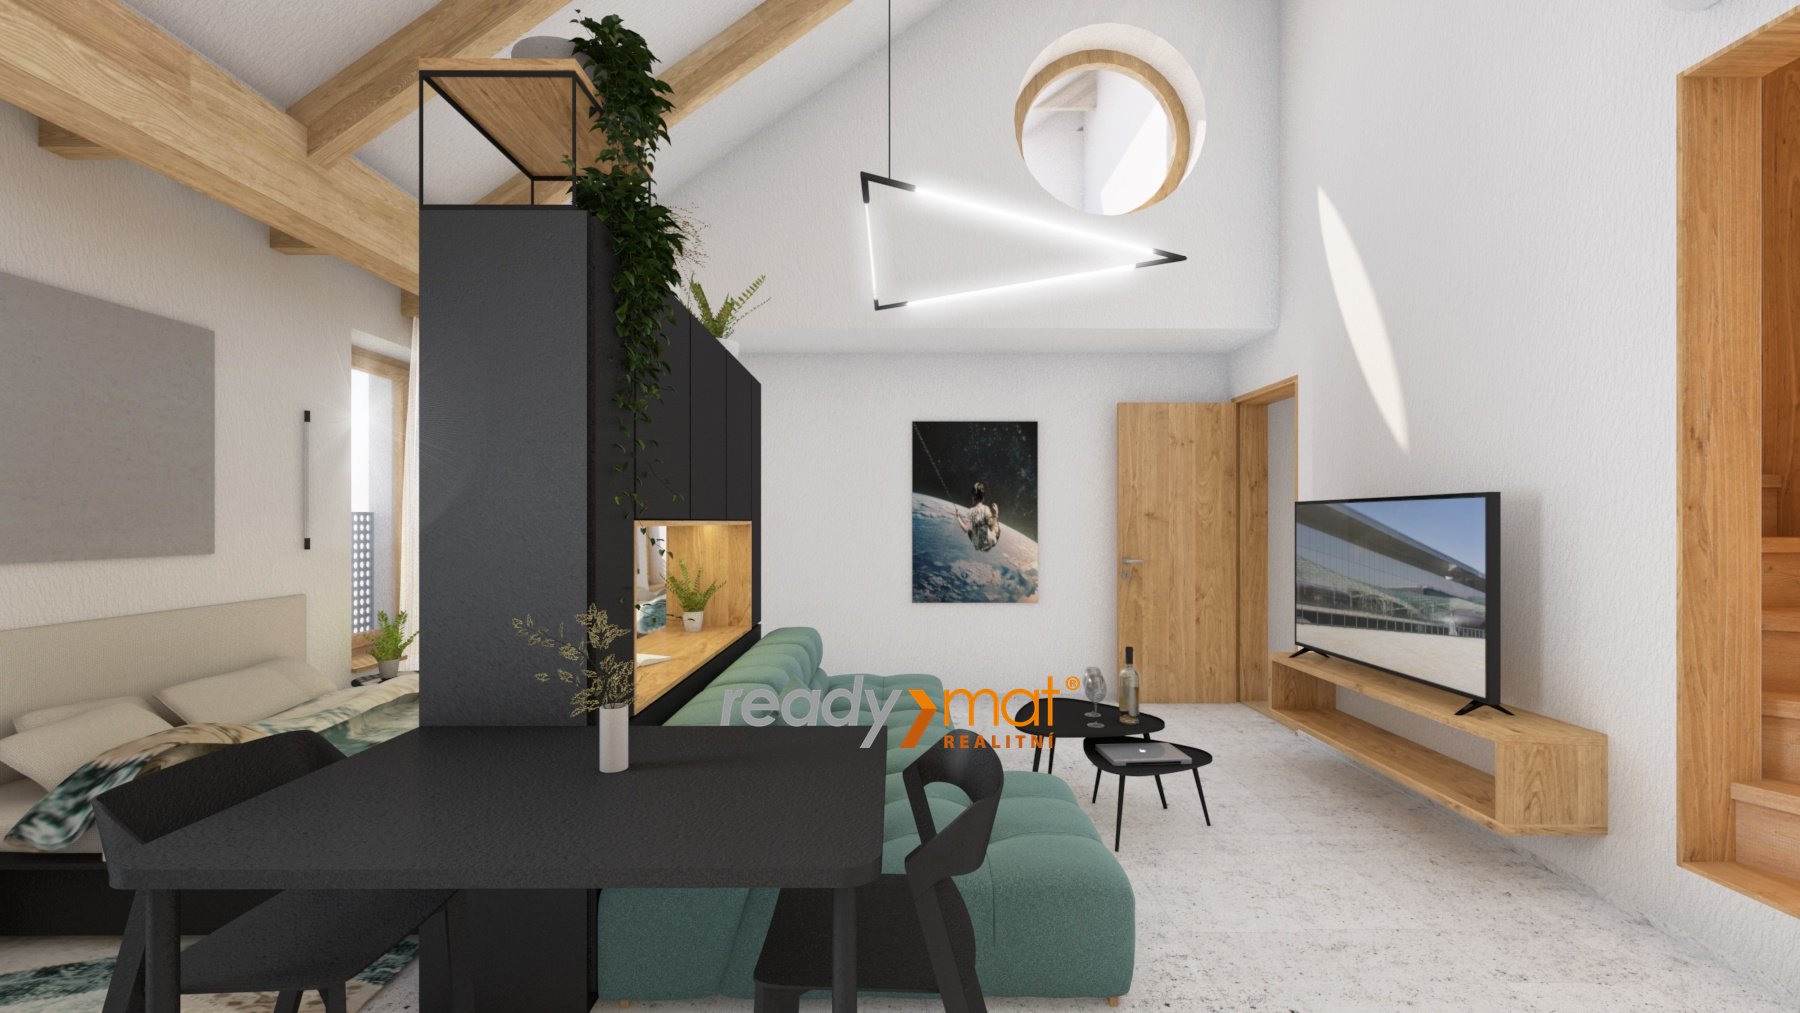 Prodej, Byty 1+kk, 39 m² – Hodonín - ready-mat realitní